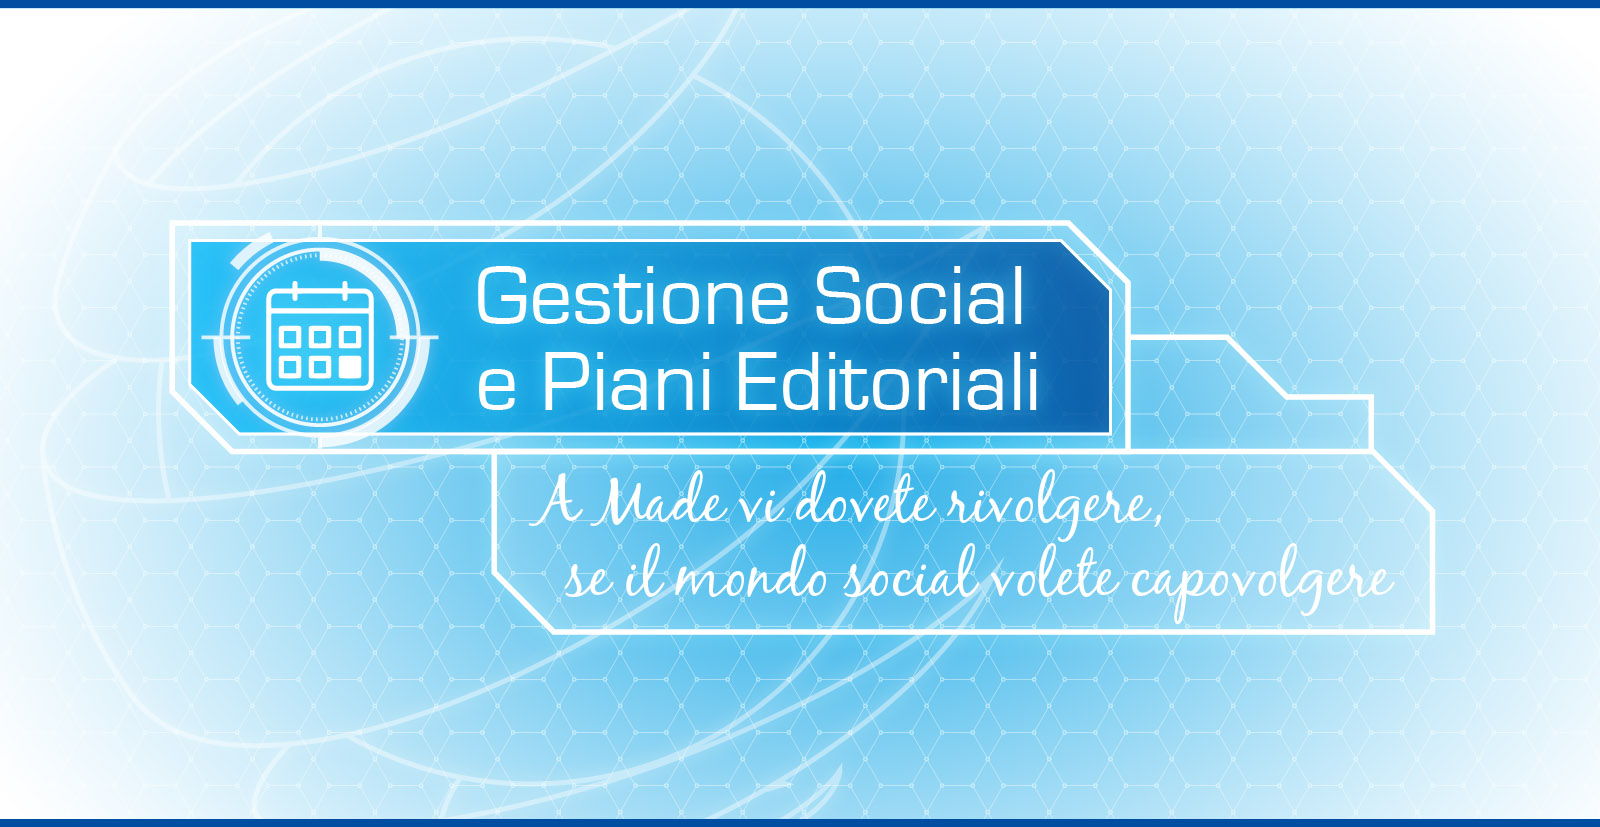 Gestione Social e Piani Editoriali